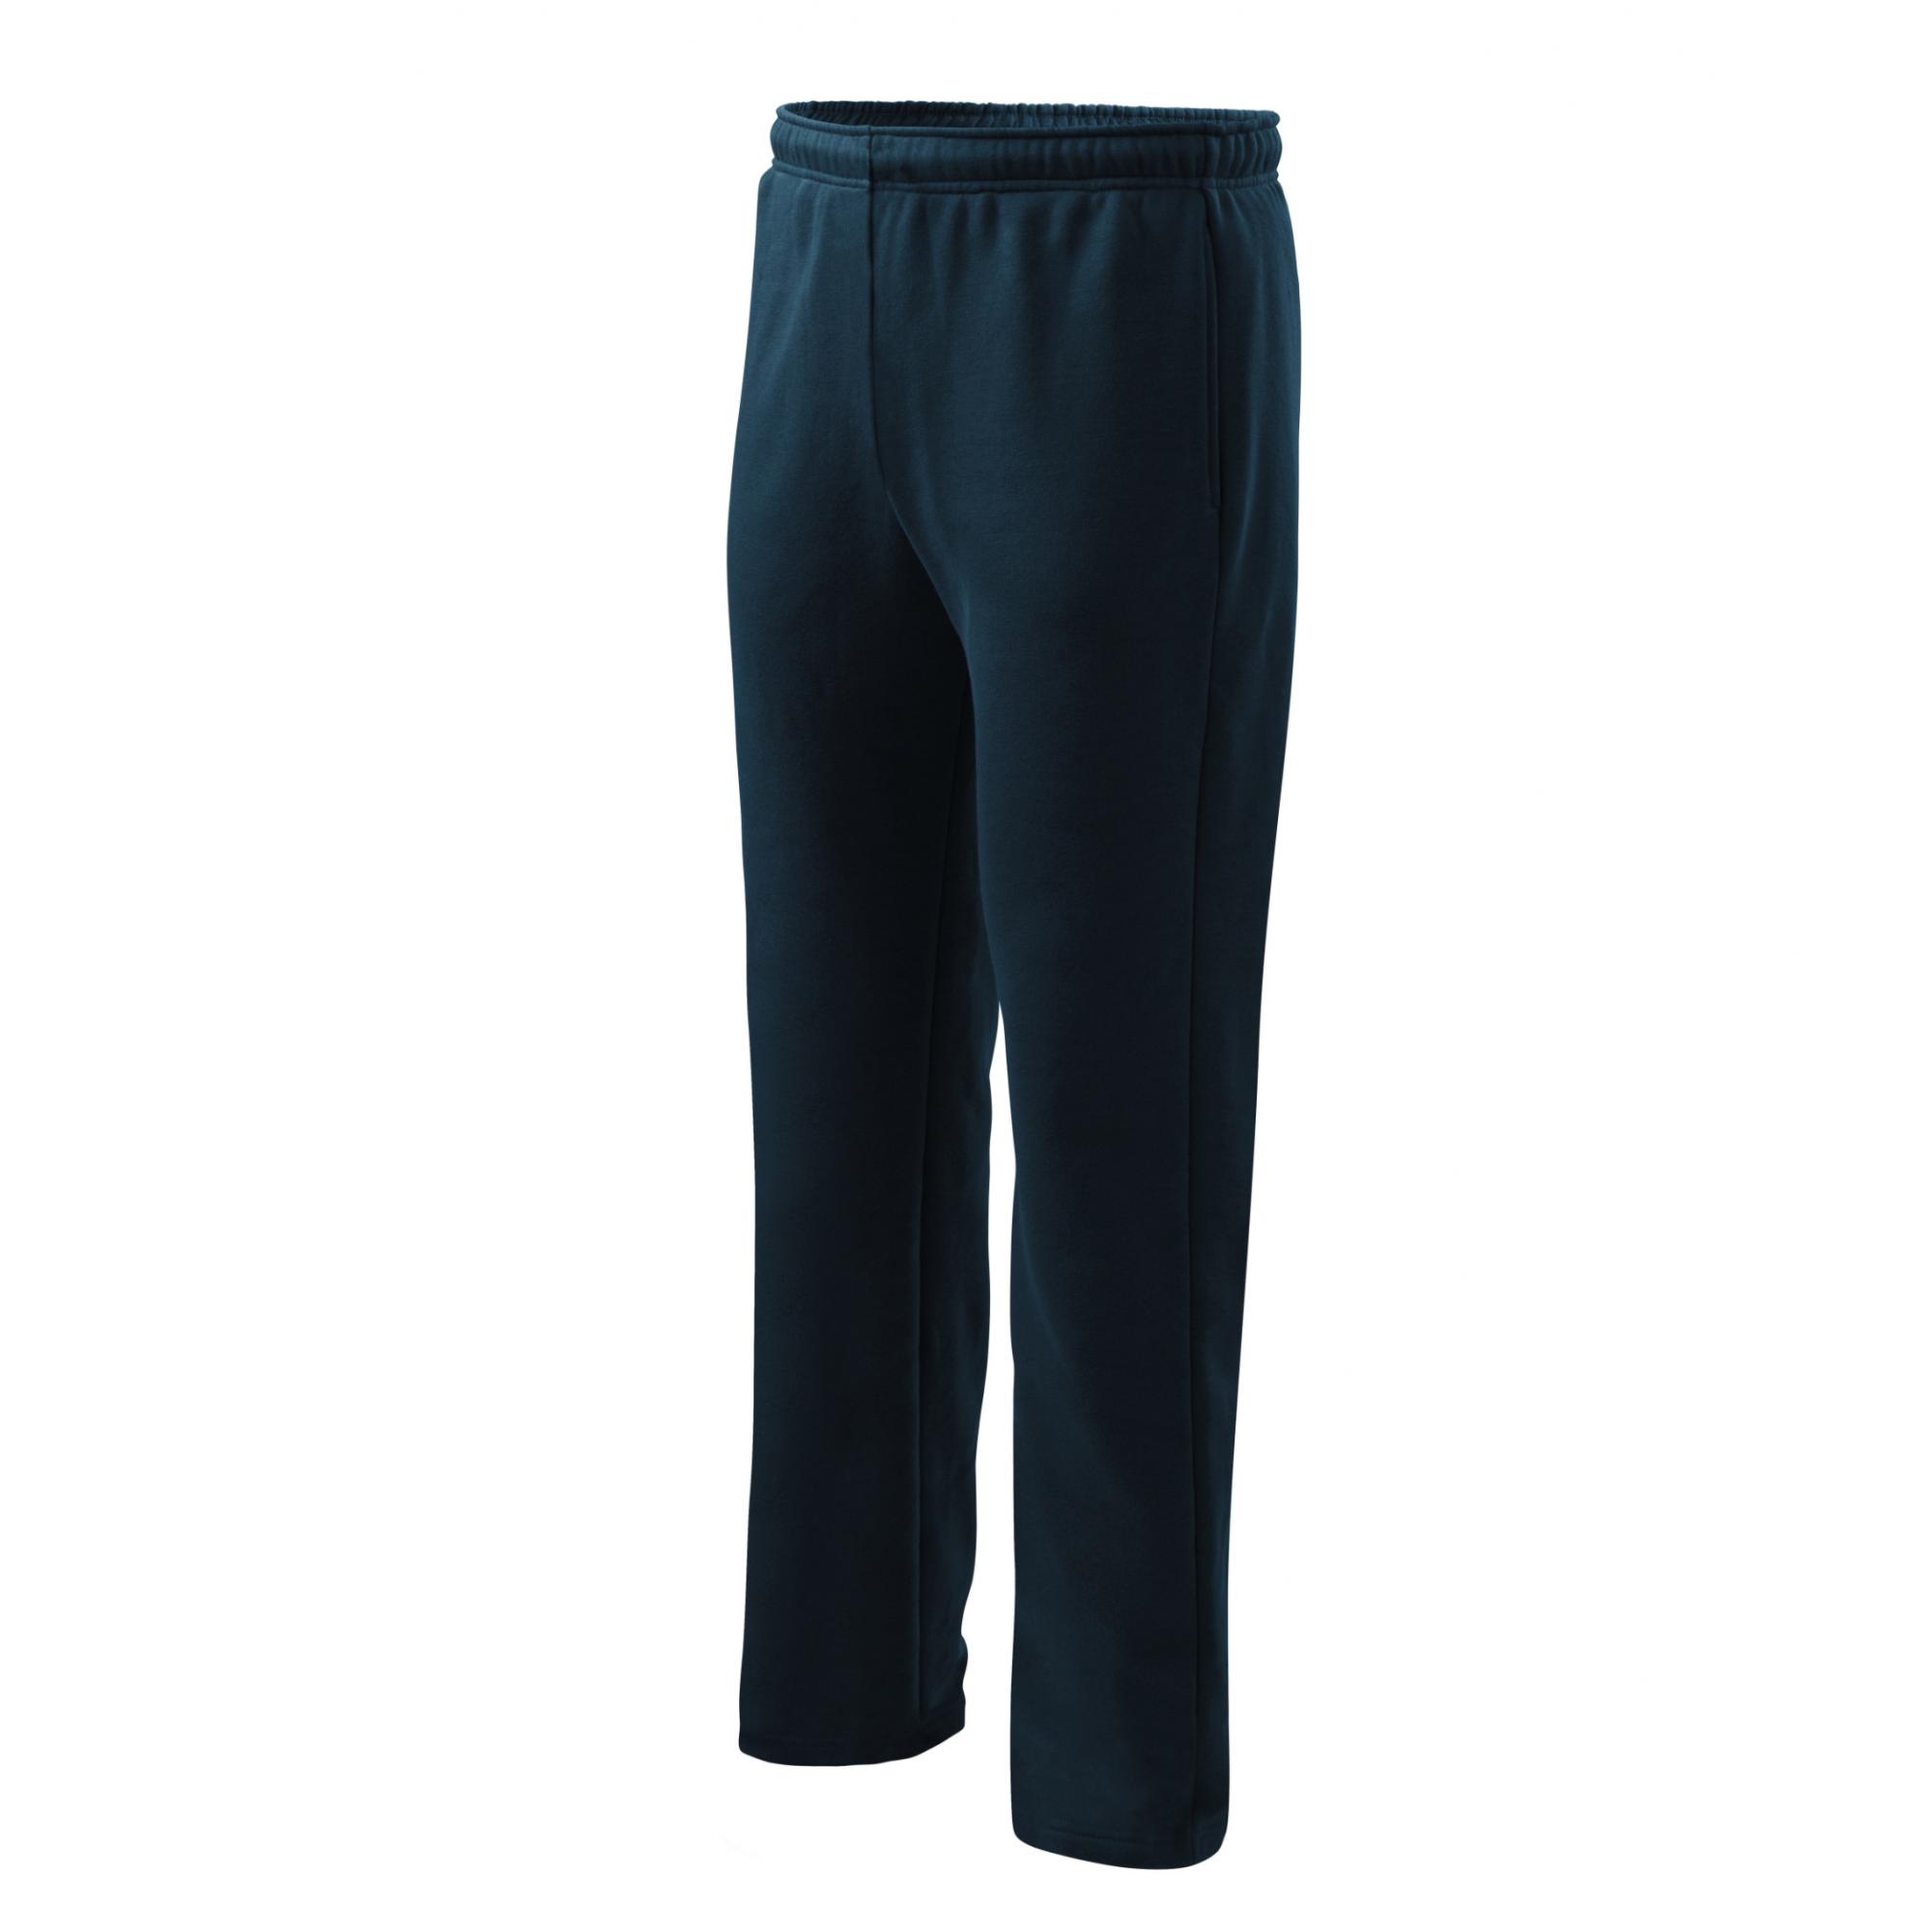 Pantaloni pentru bărbaţi/copii Comfort 607 Albastru marin 10ani